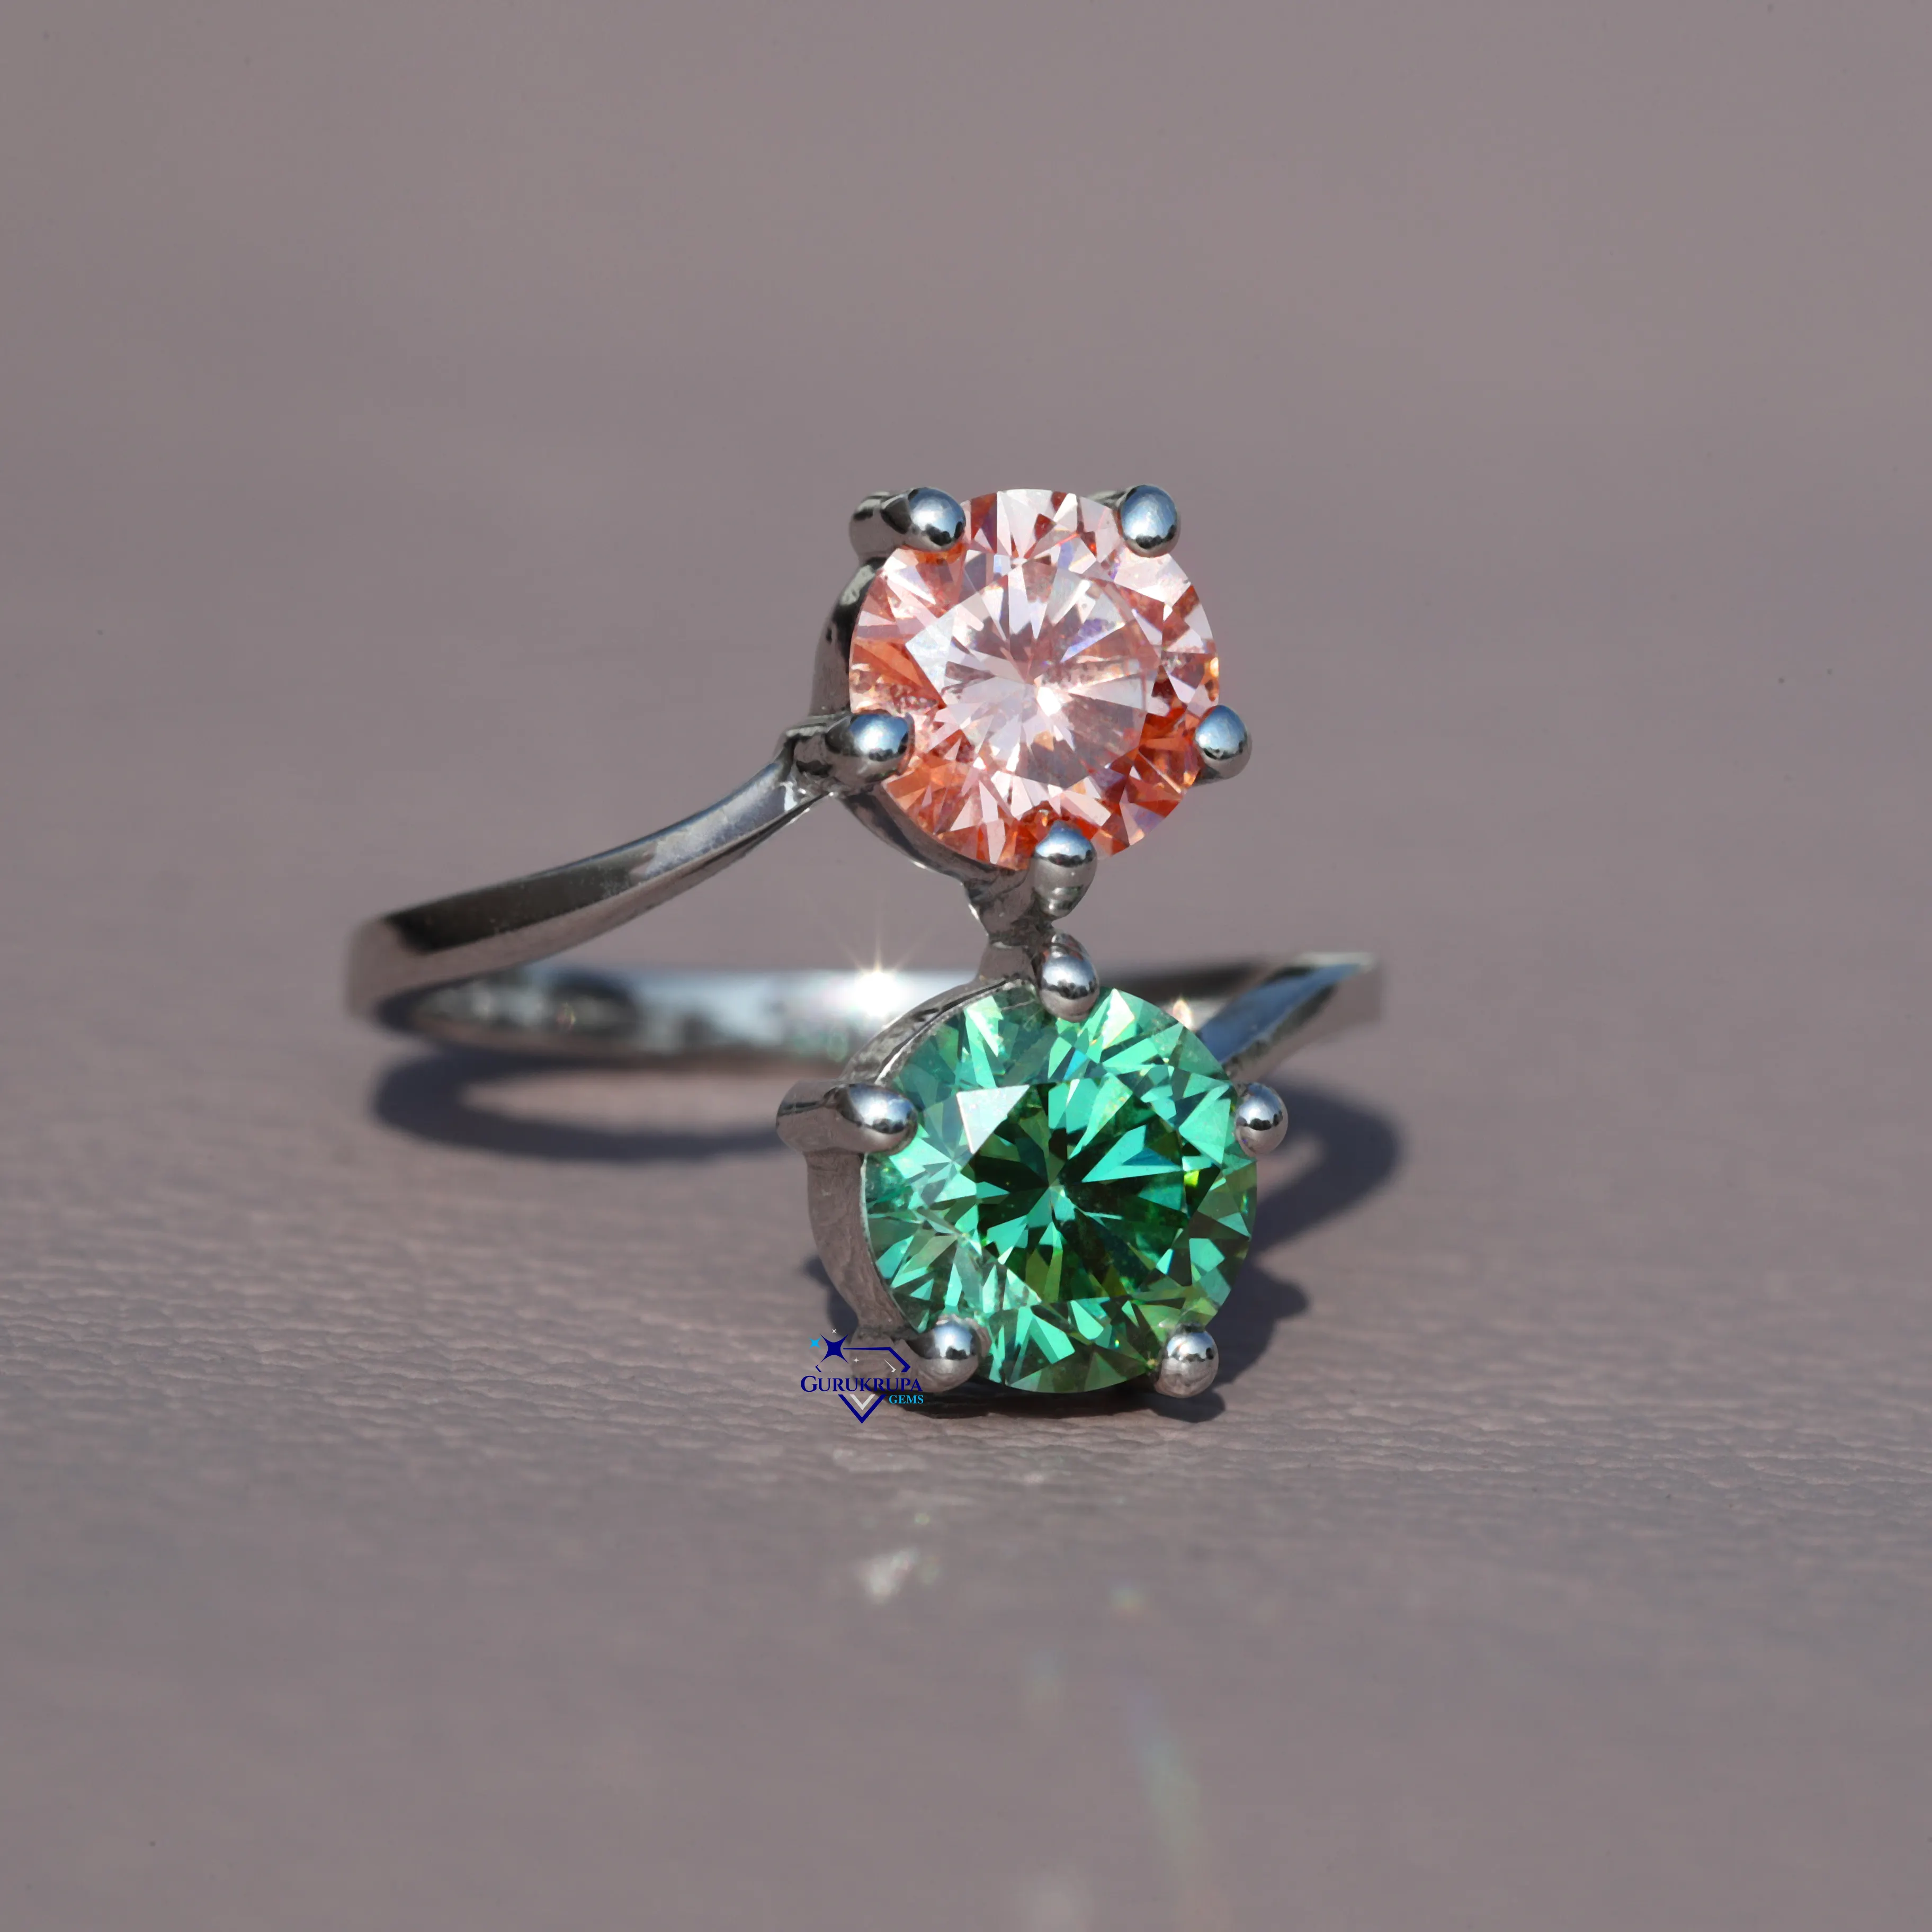 Hermoso anillo de diamantes toi et moi de corte redondo cultivado en laboratorio hecho a mano en plata de ley 925, joyería de compromiso para mujer con claridad VVS